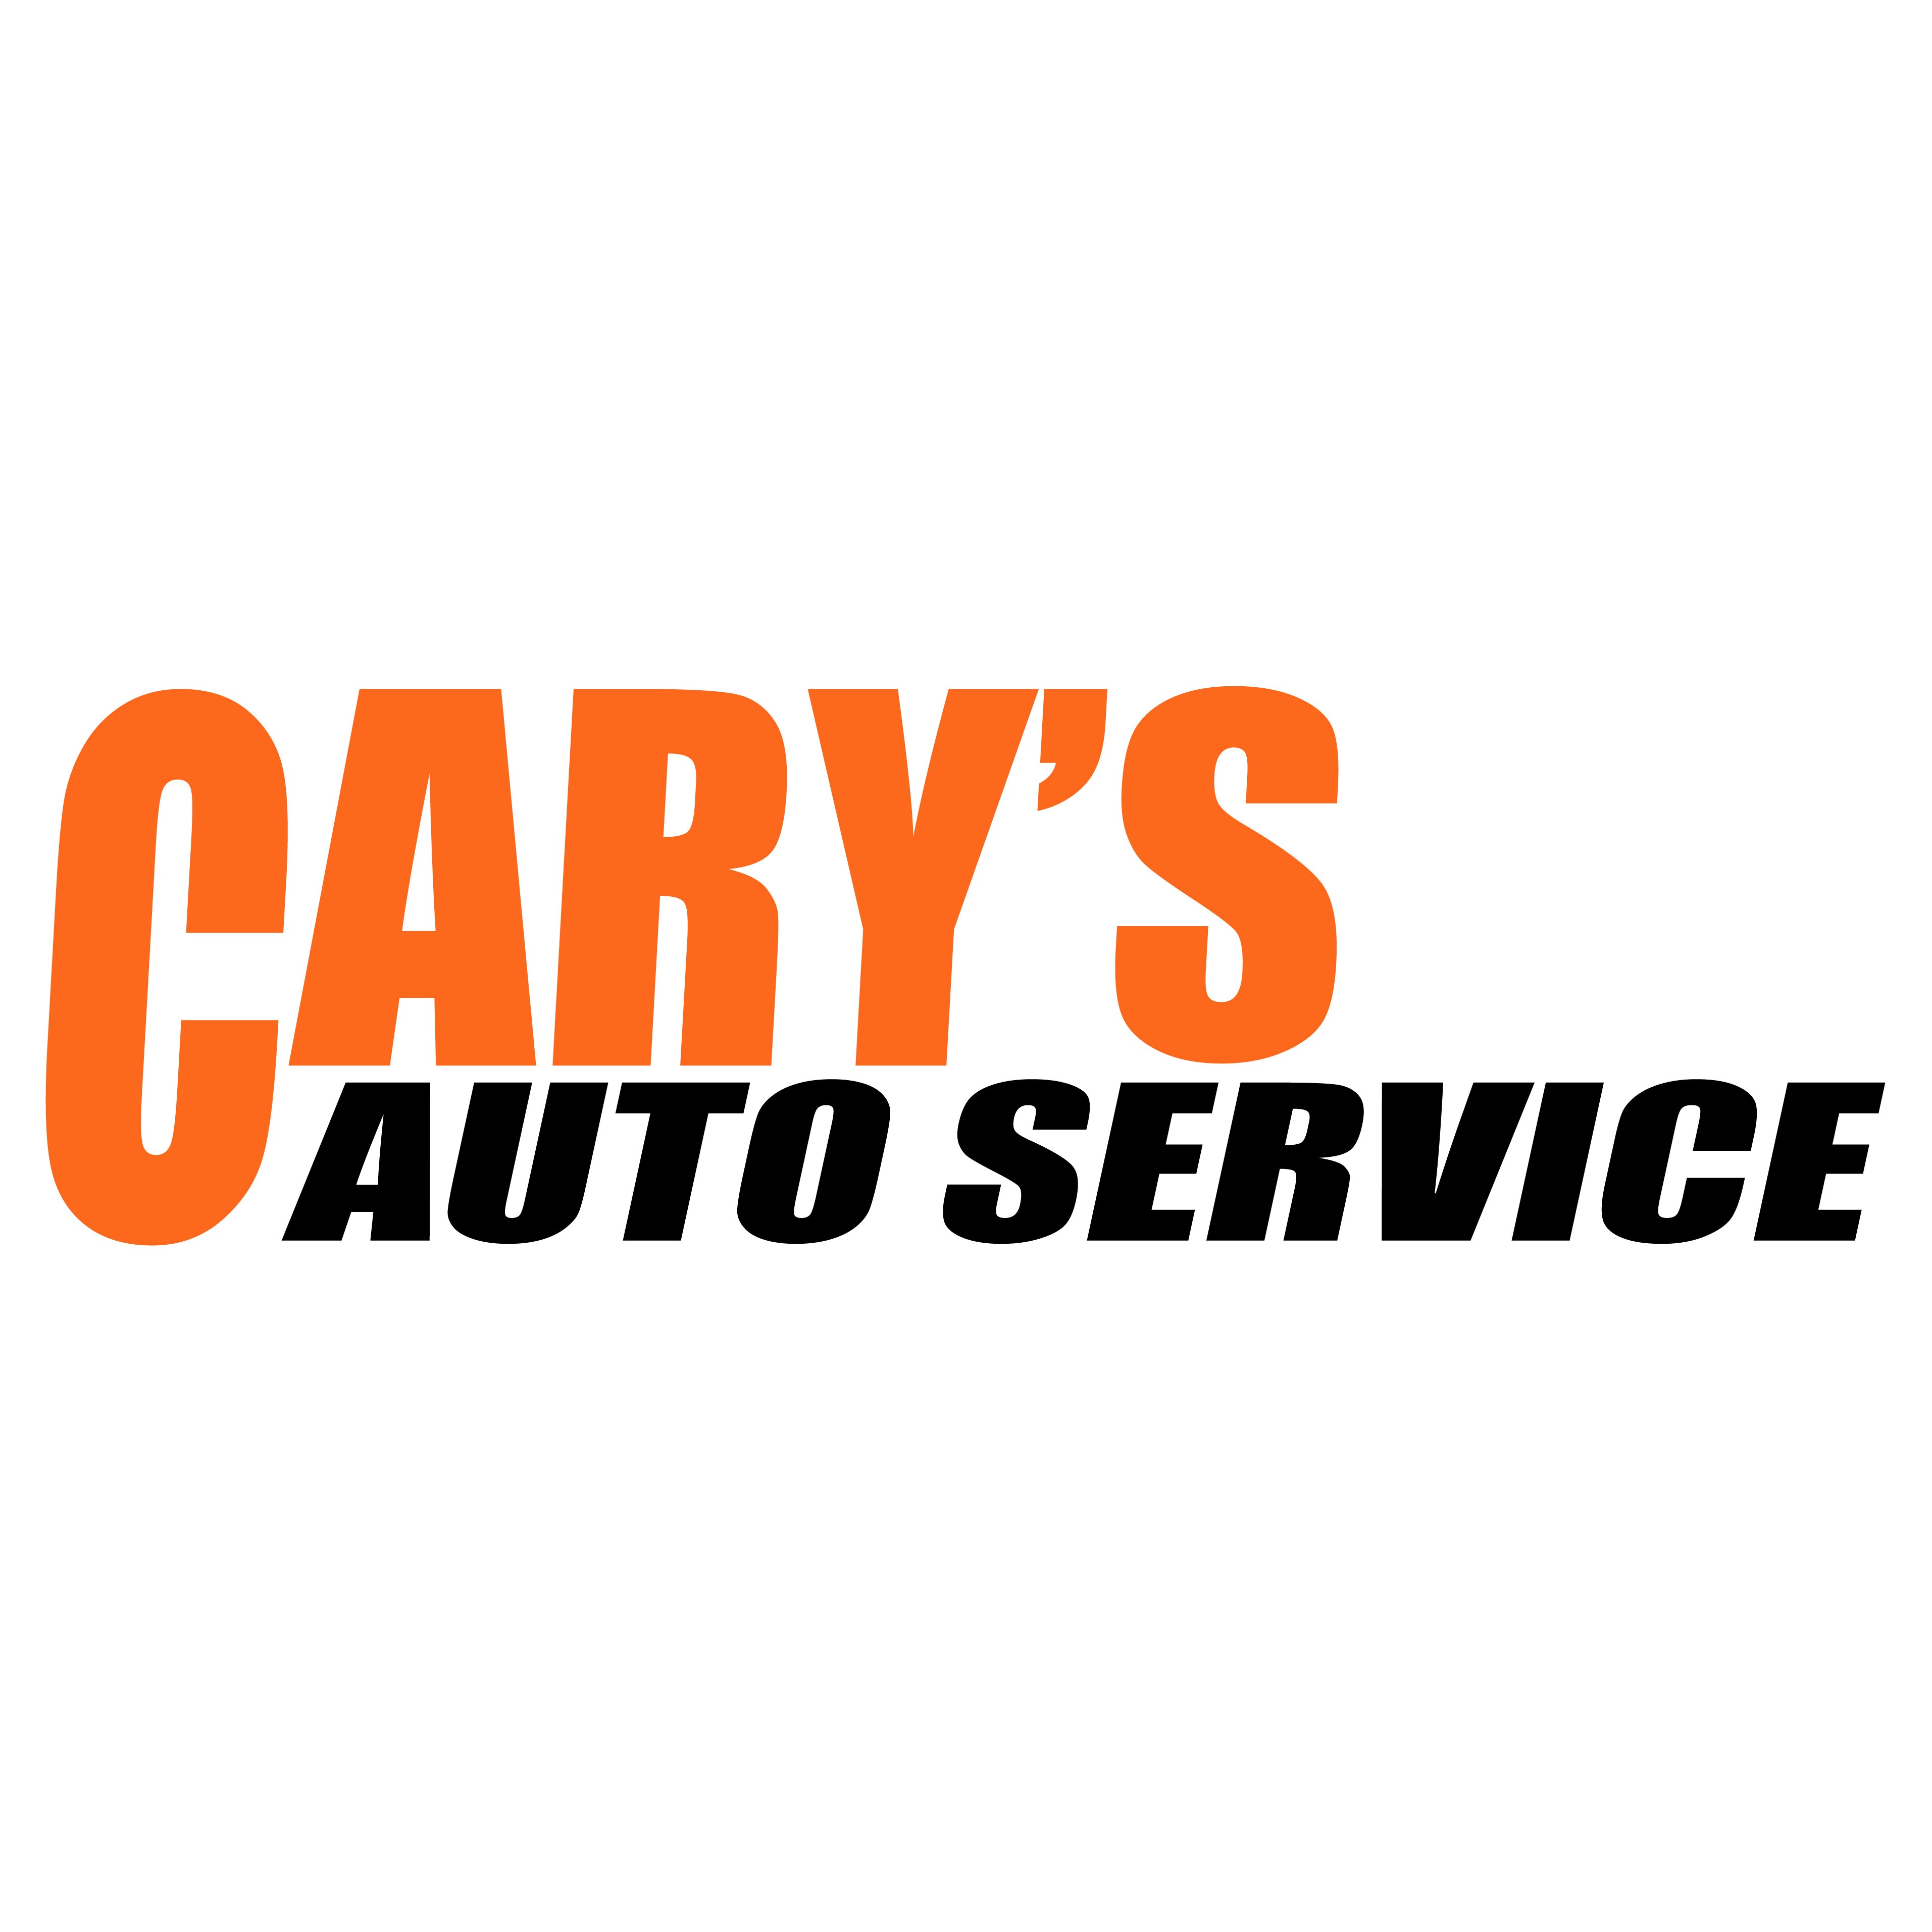 Cary's Auto Service - Tempe, AZ 85281 - (480)636-7964 | ShowMeLocal.com